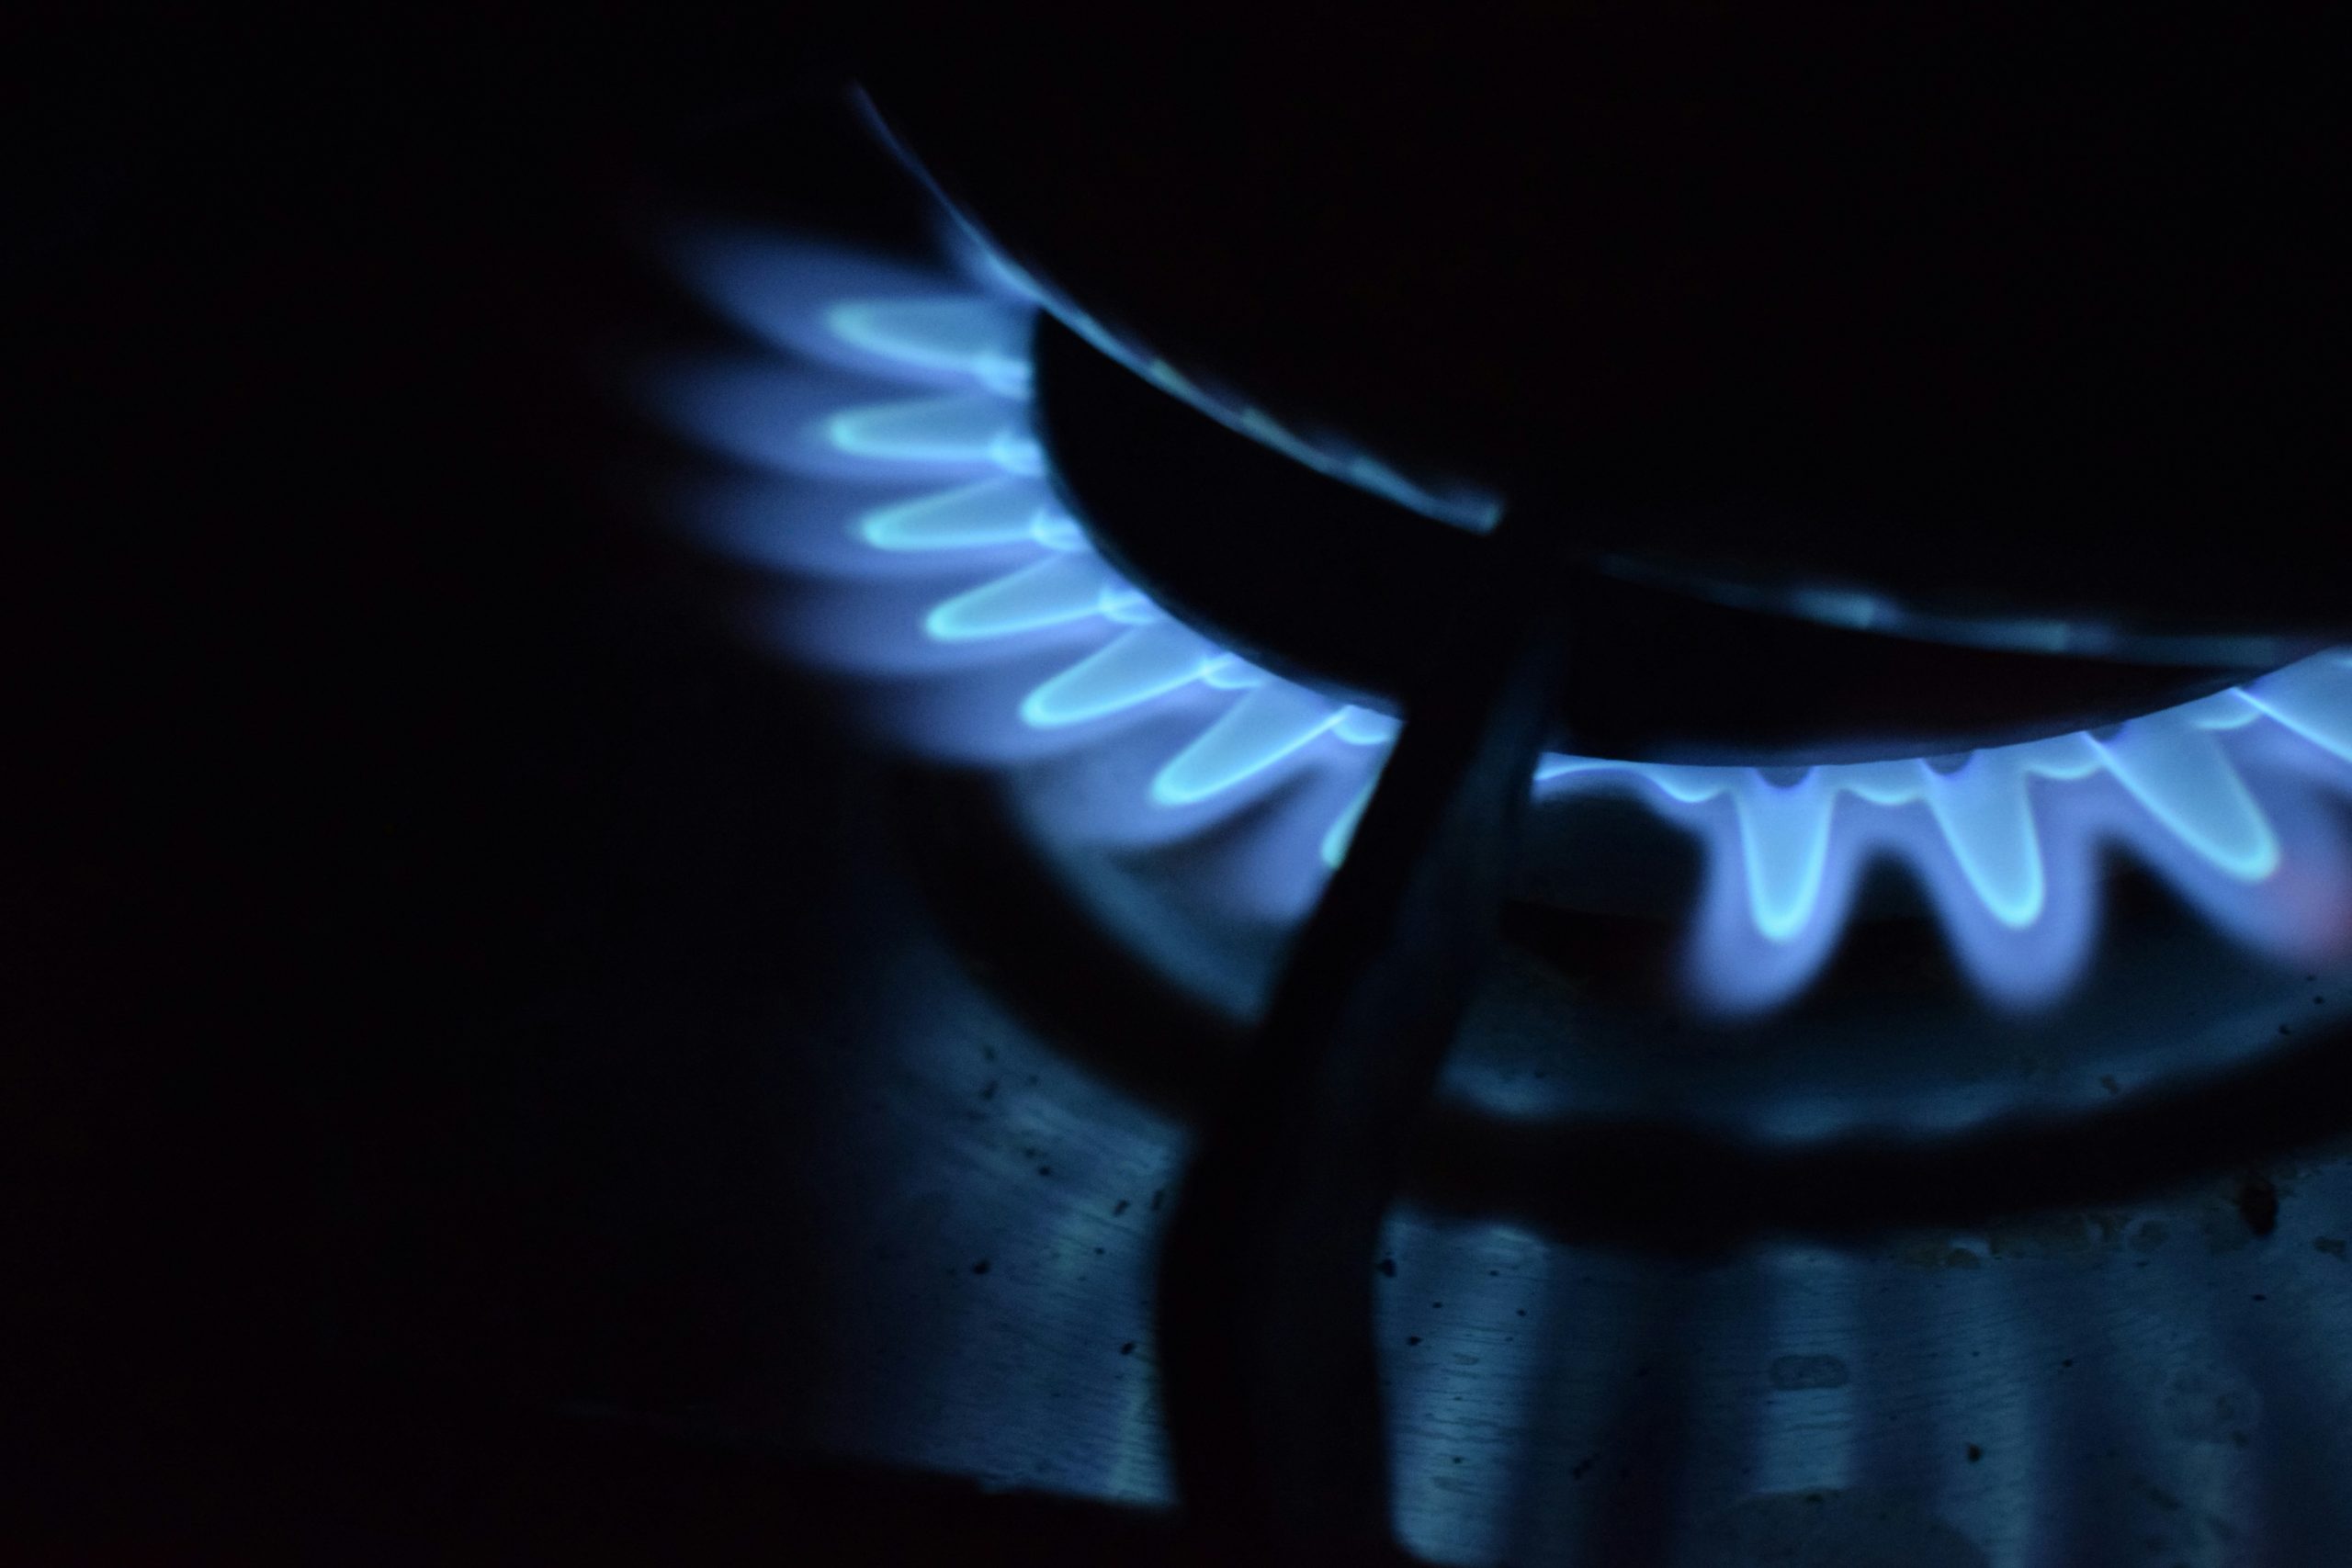 2027-től jön a szénadó a háztartási gázfogyasztókra is